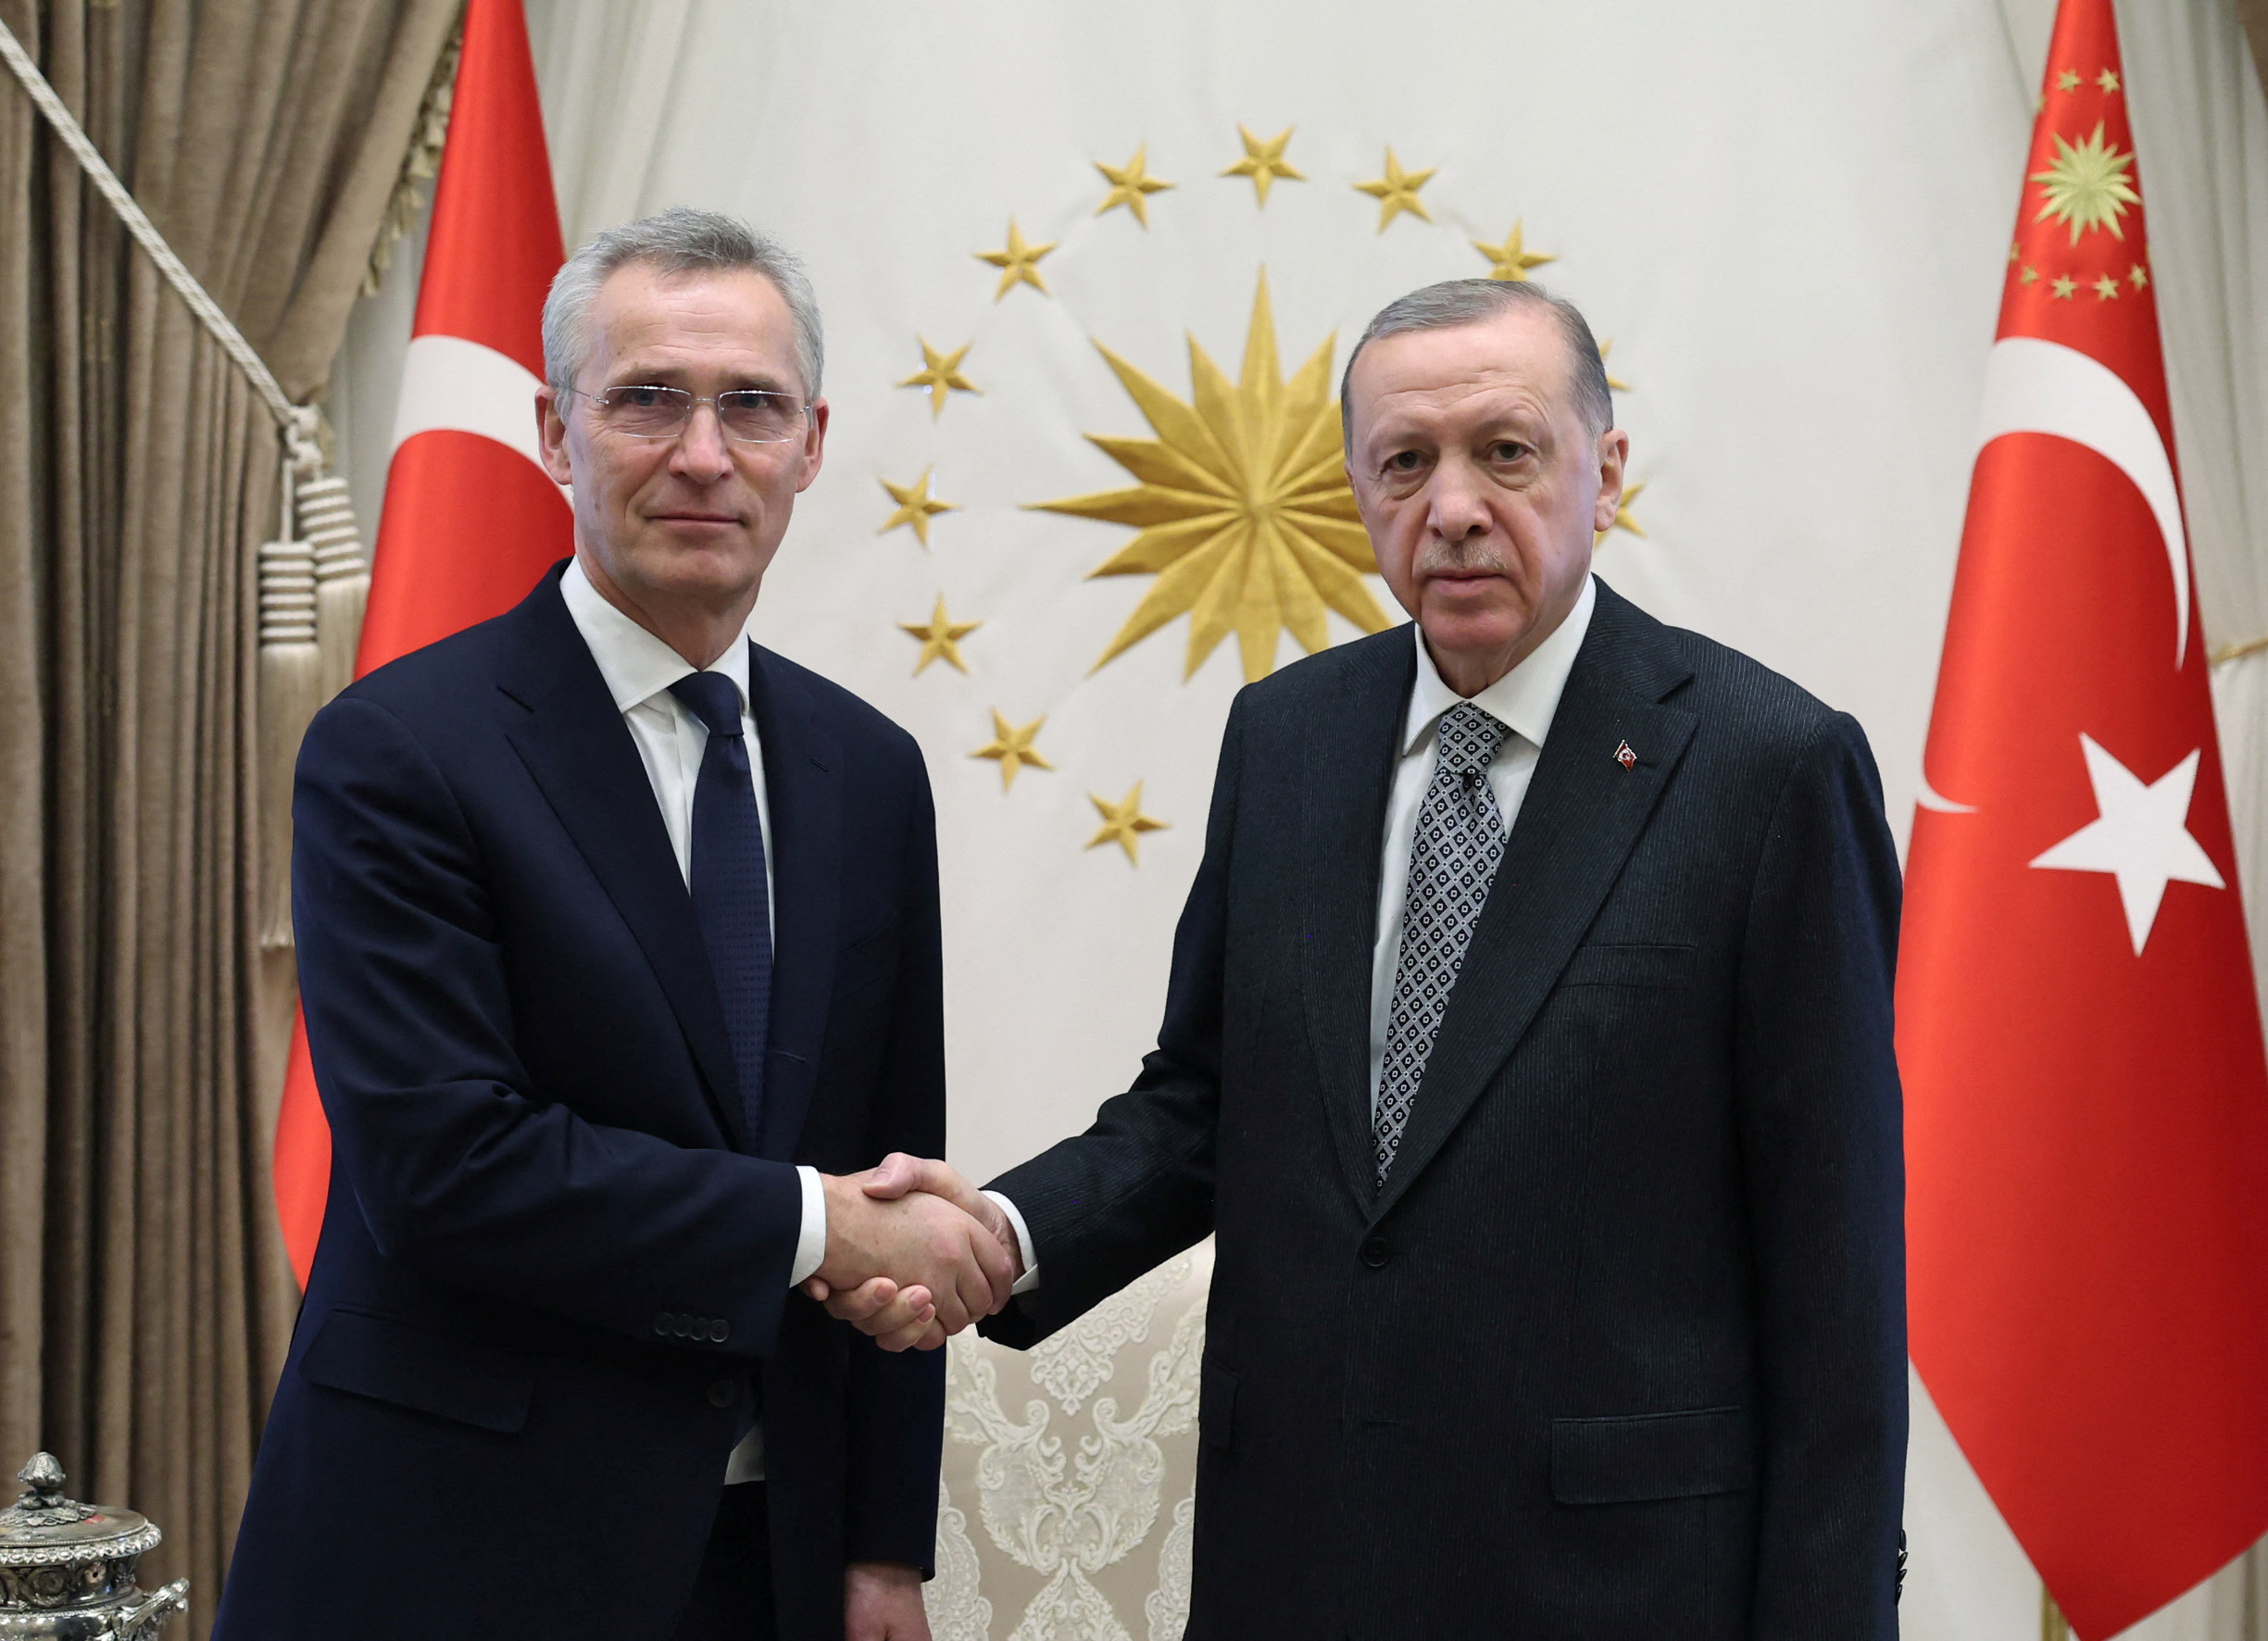 El jefe de la OTAN volvió a pedir a Erdogan que levante el veto a la candidatura de Suecia: “Estocolmo ha cumplido la exigencias de Turquía” 